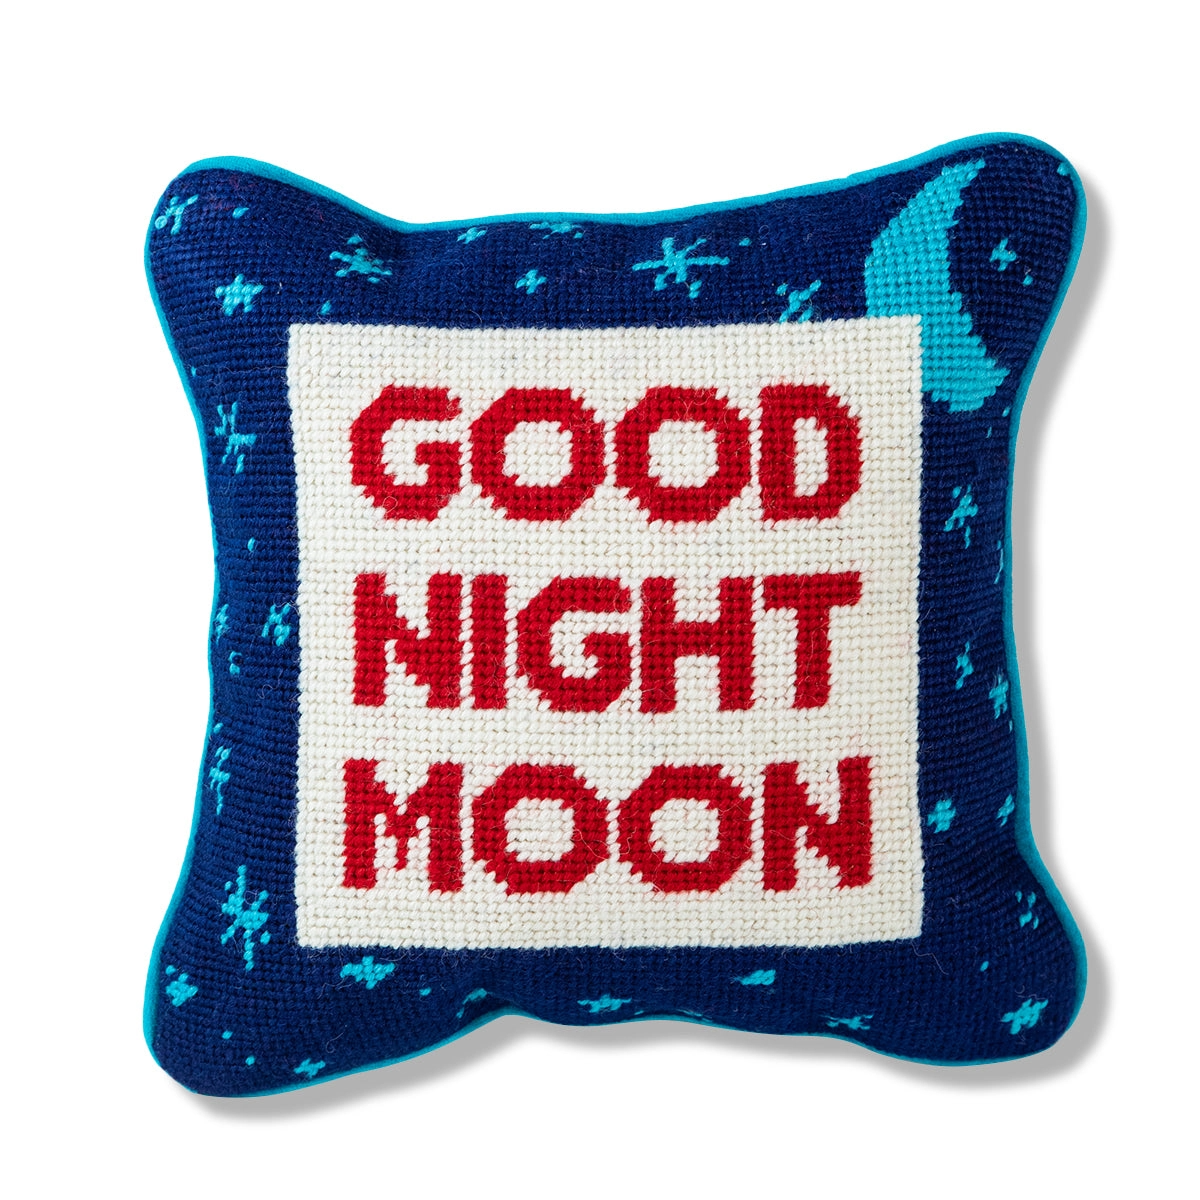 Goodnight moon needlepoint pillow